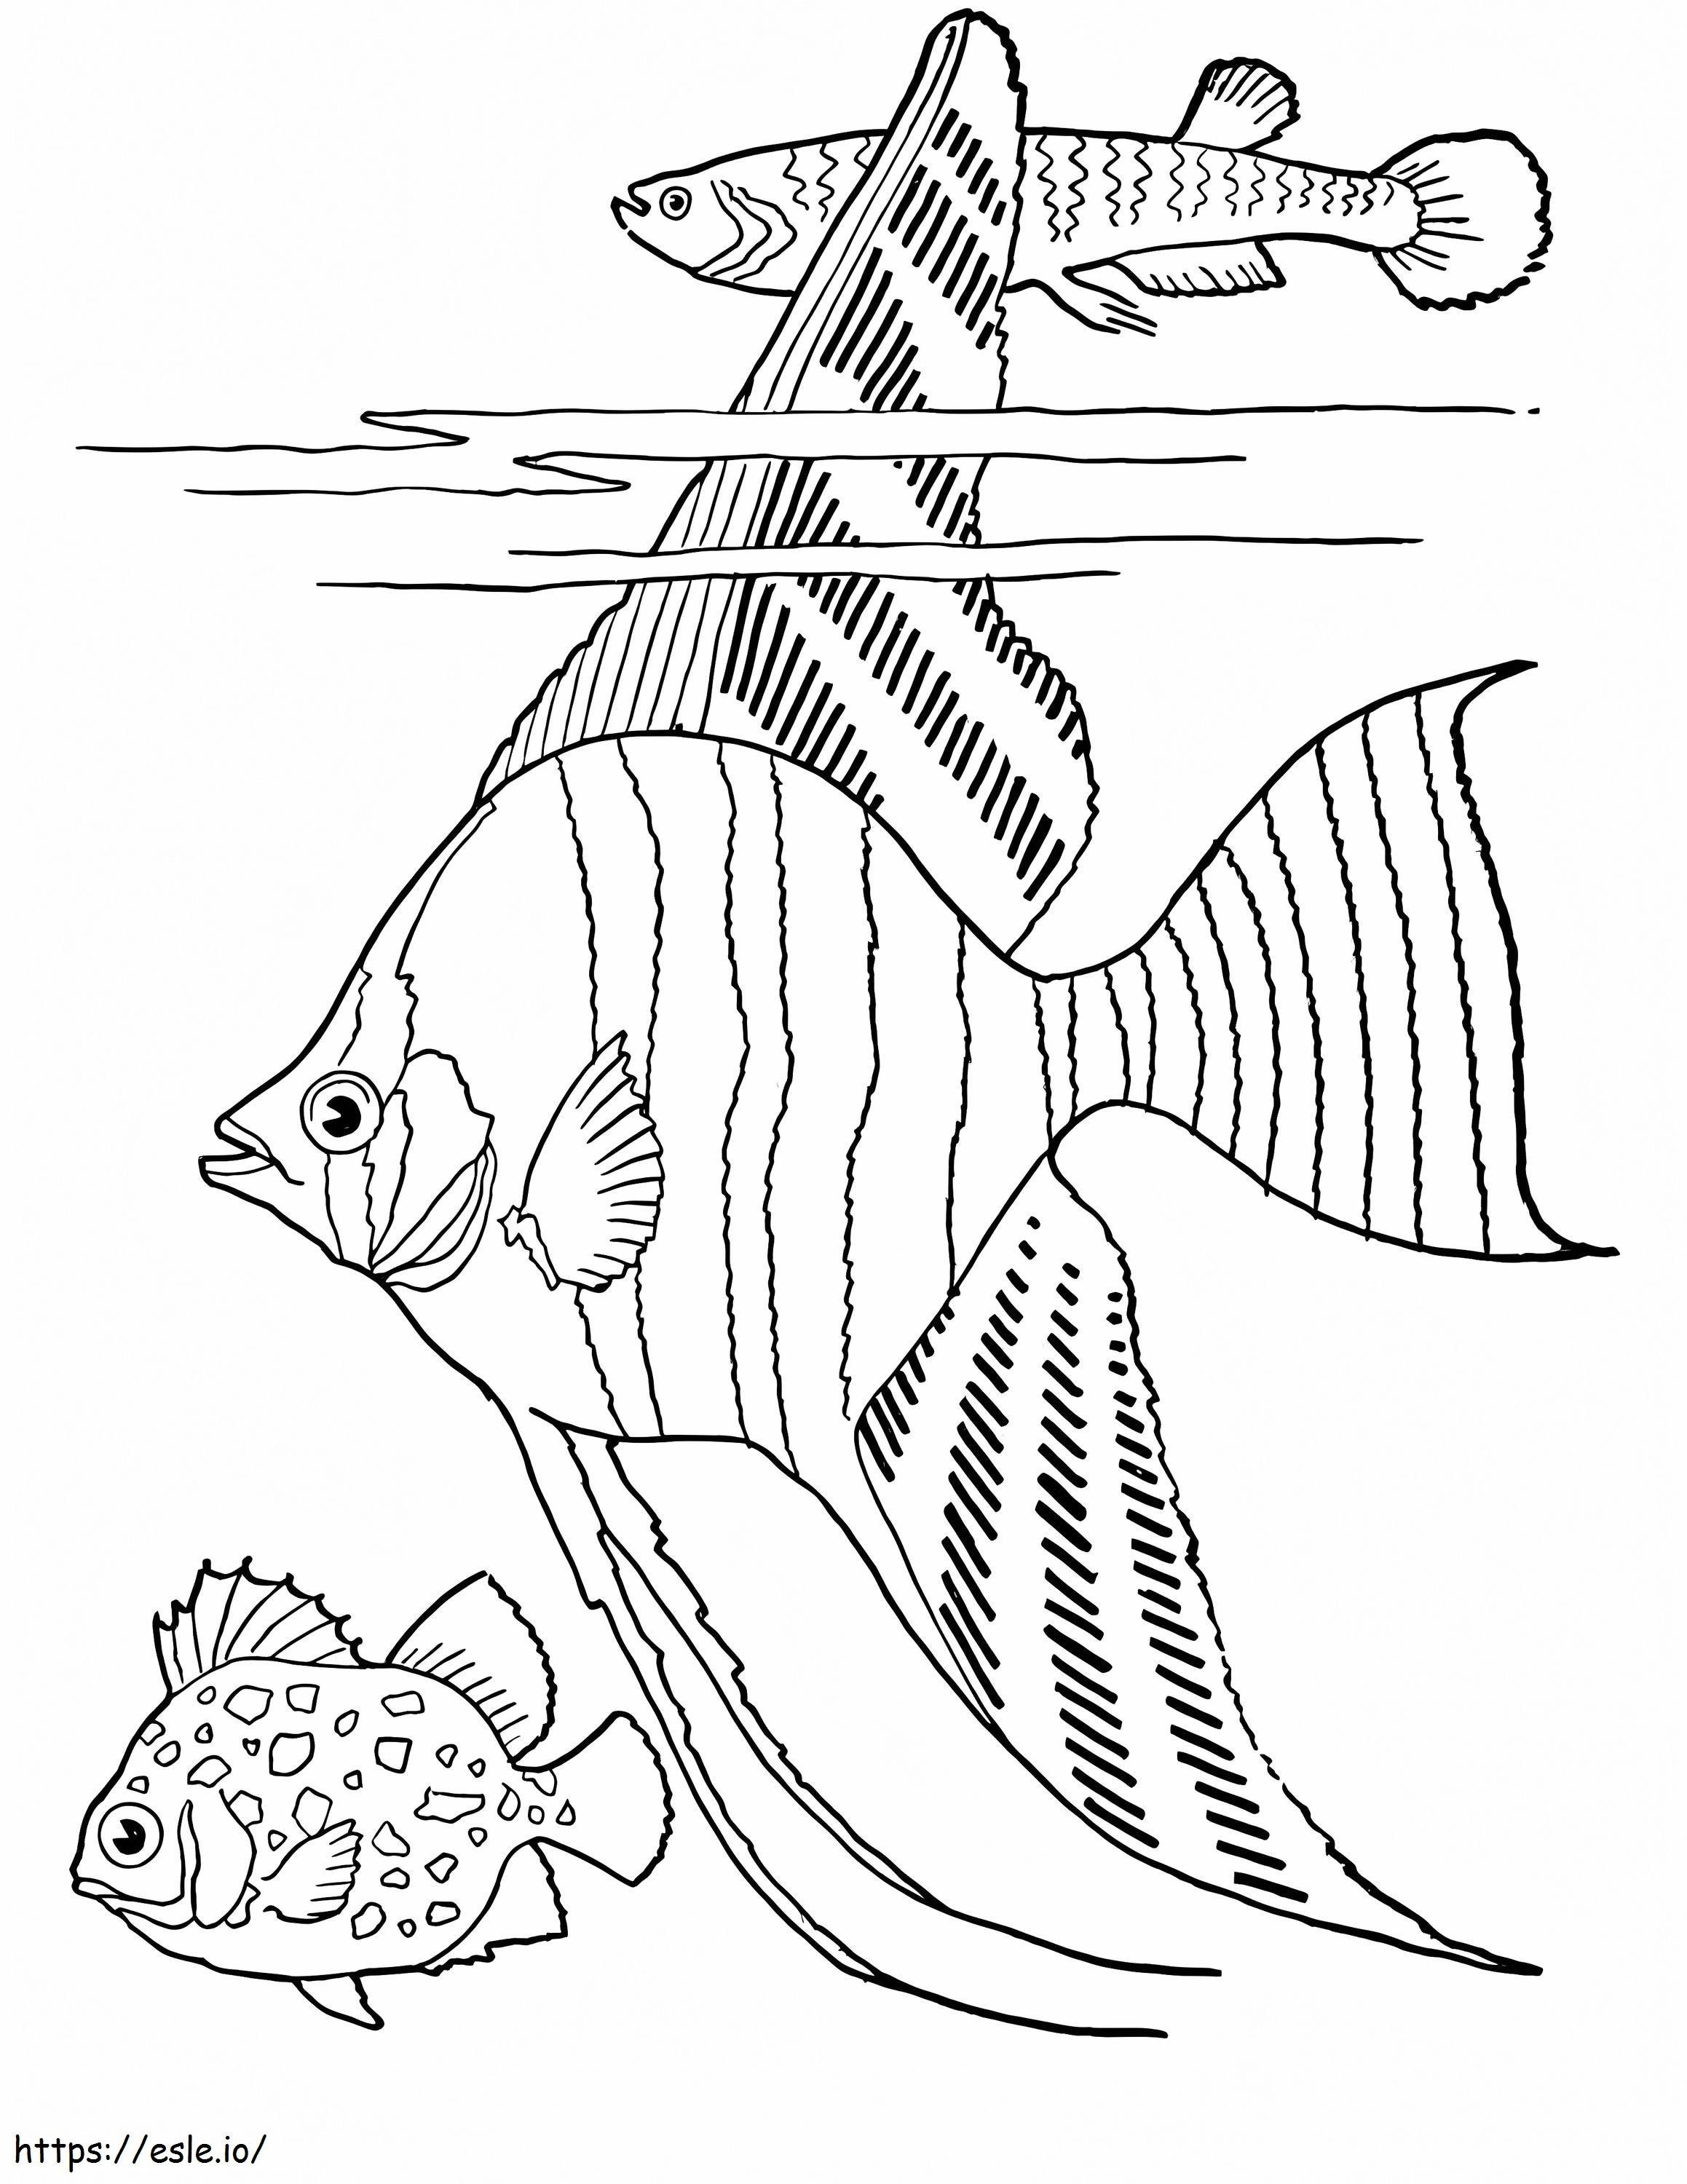 Drei normale Fische ausmalbilder